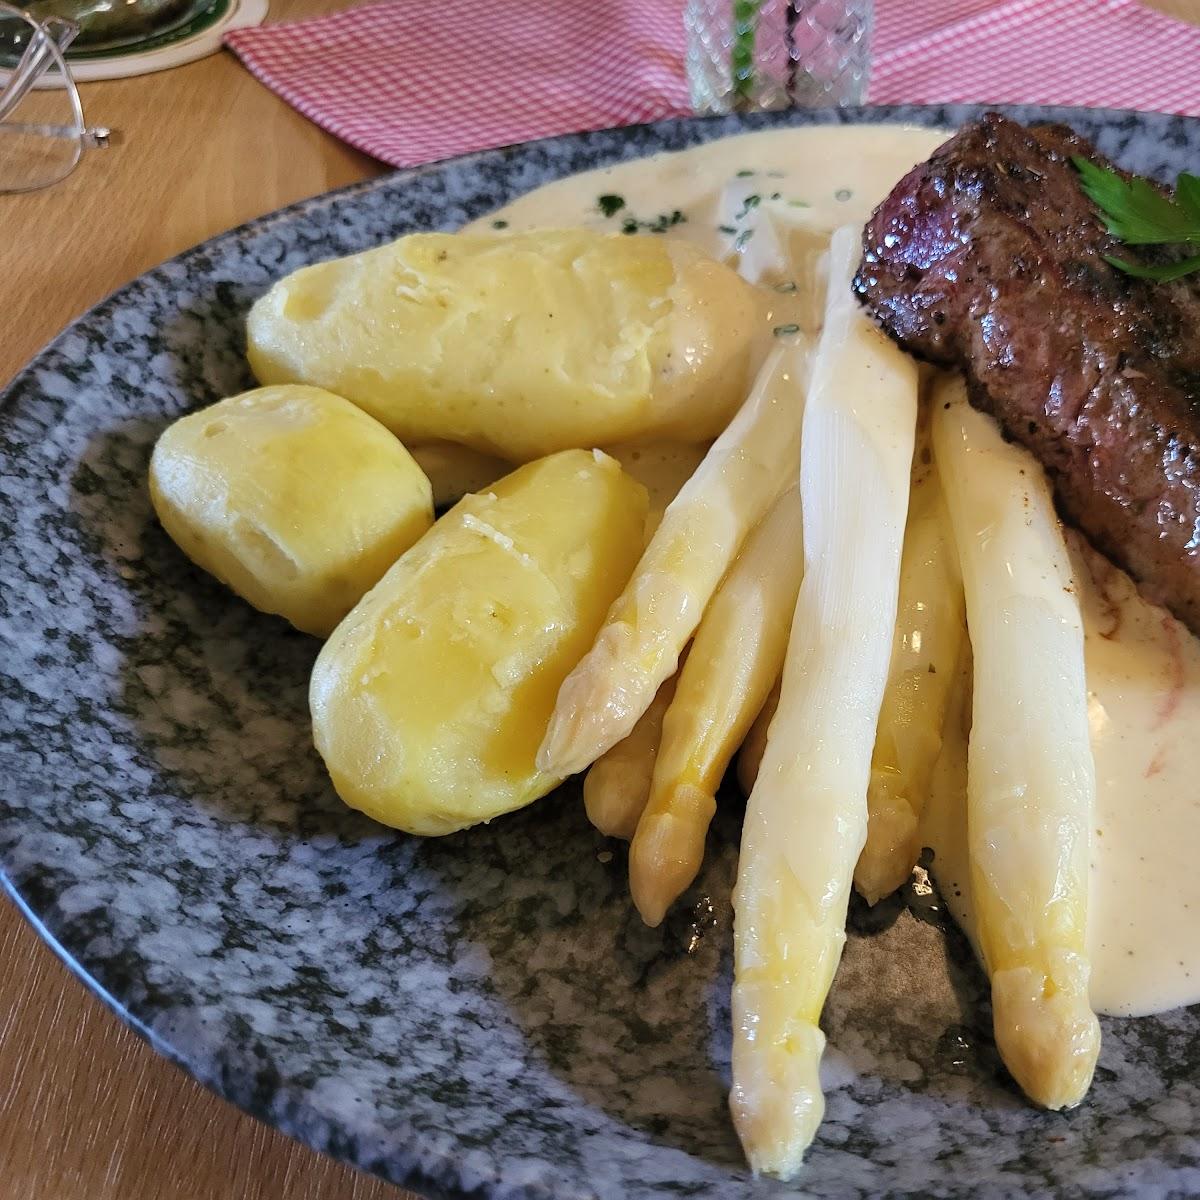 Restaurant "Restaurant am Birkenwald" in Freudental